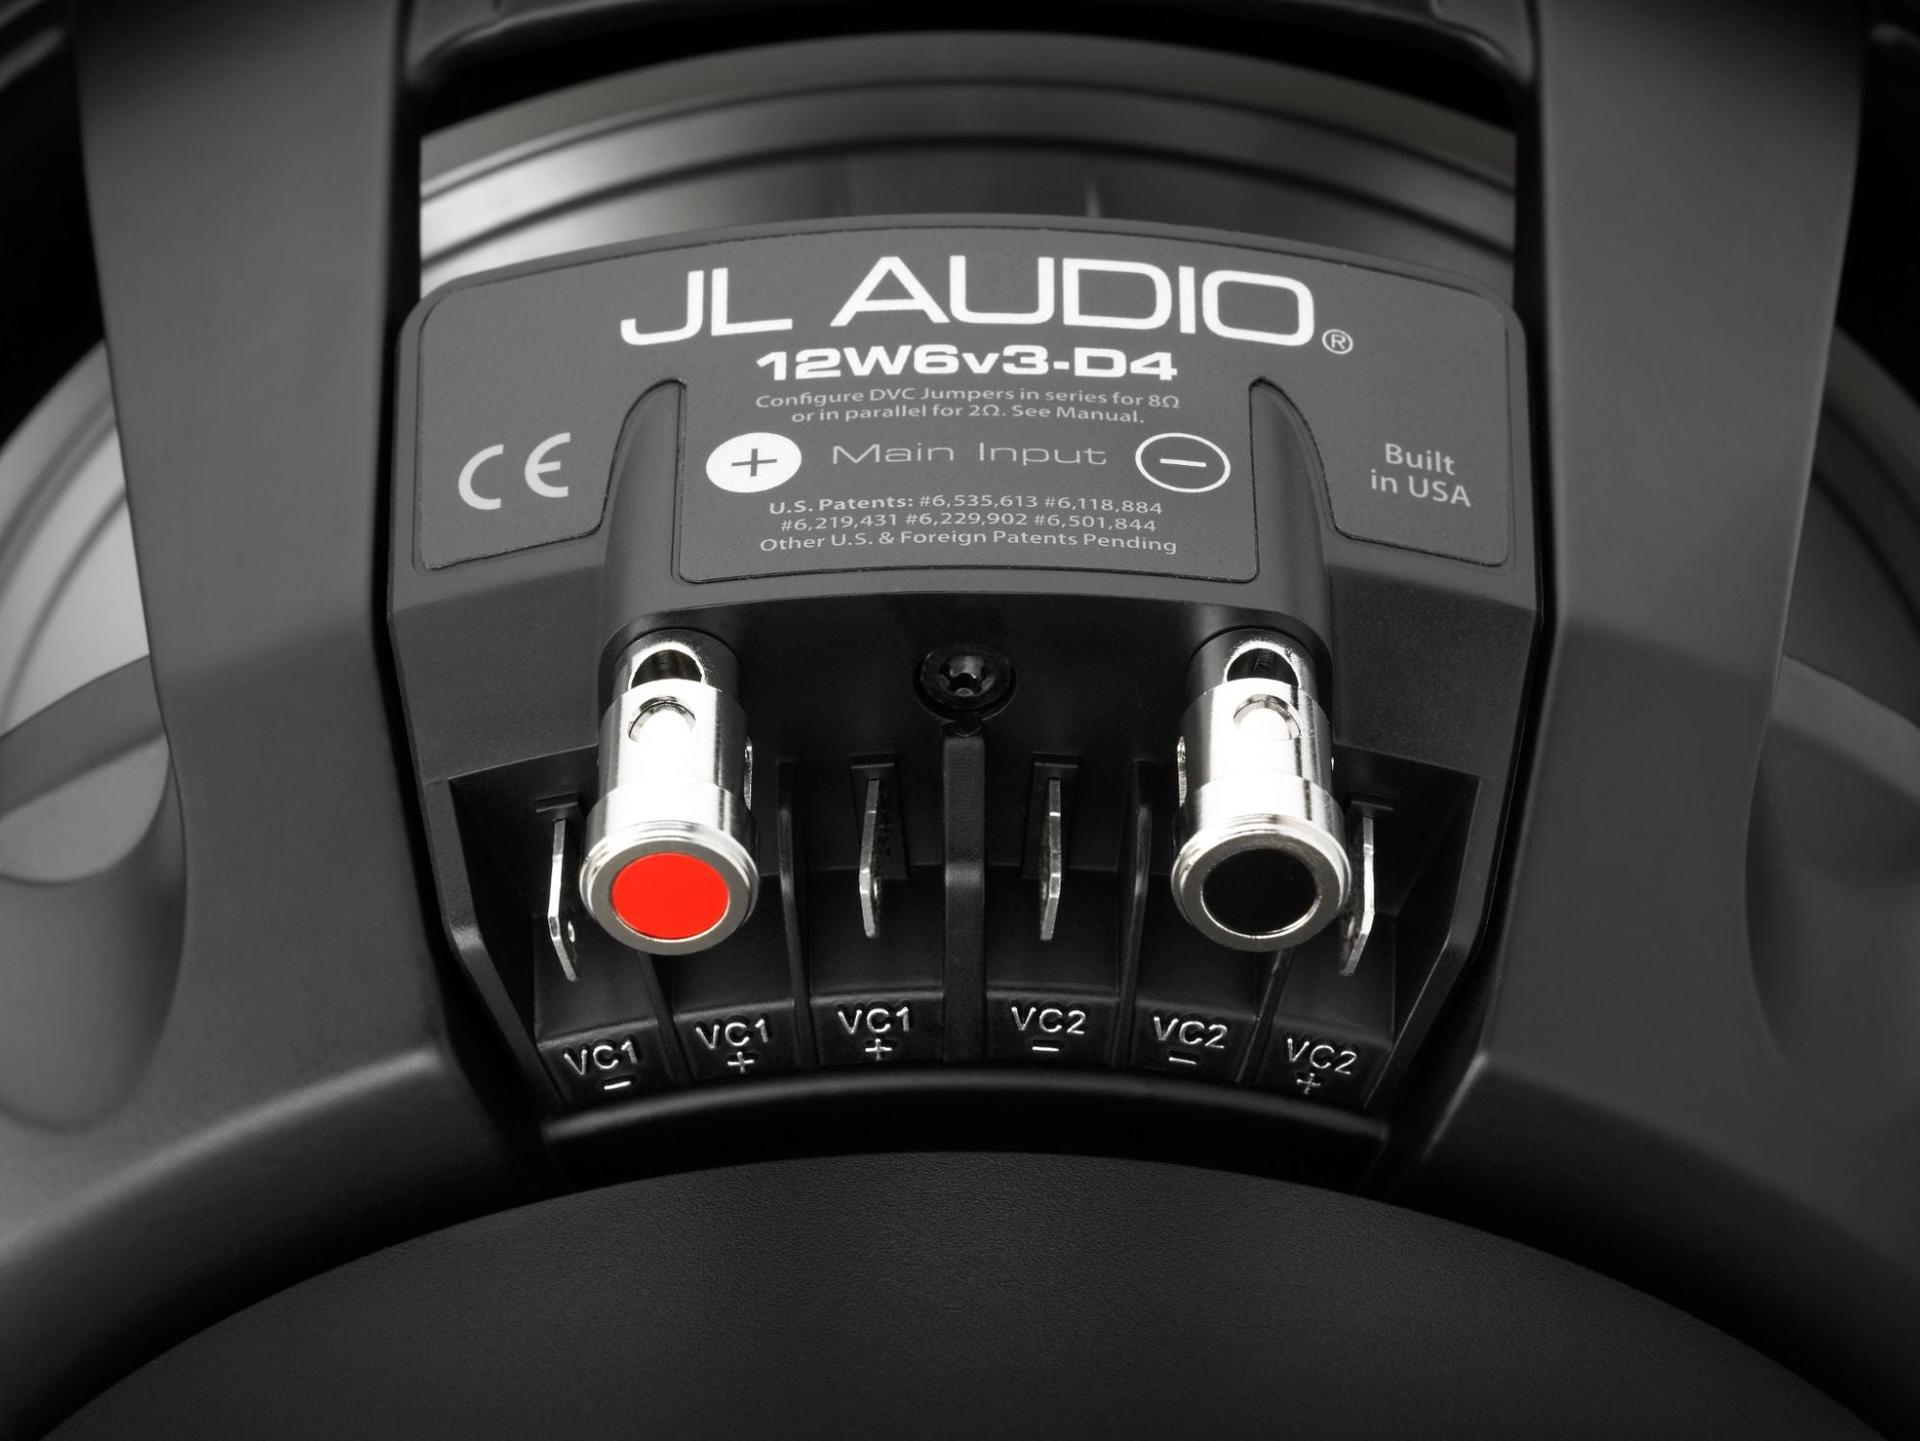 JL Audio 12W6v3-D4 12-inch subwoofer driver (600W, dual 4 ohm voice coils)